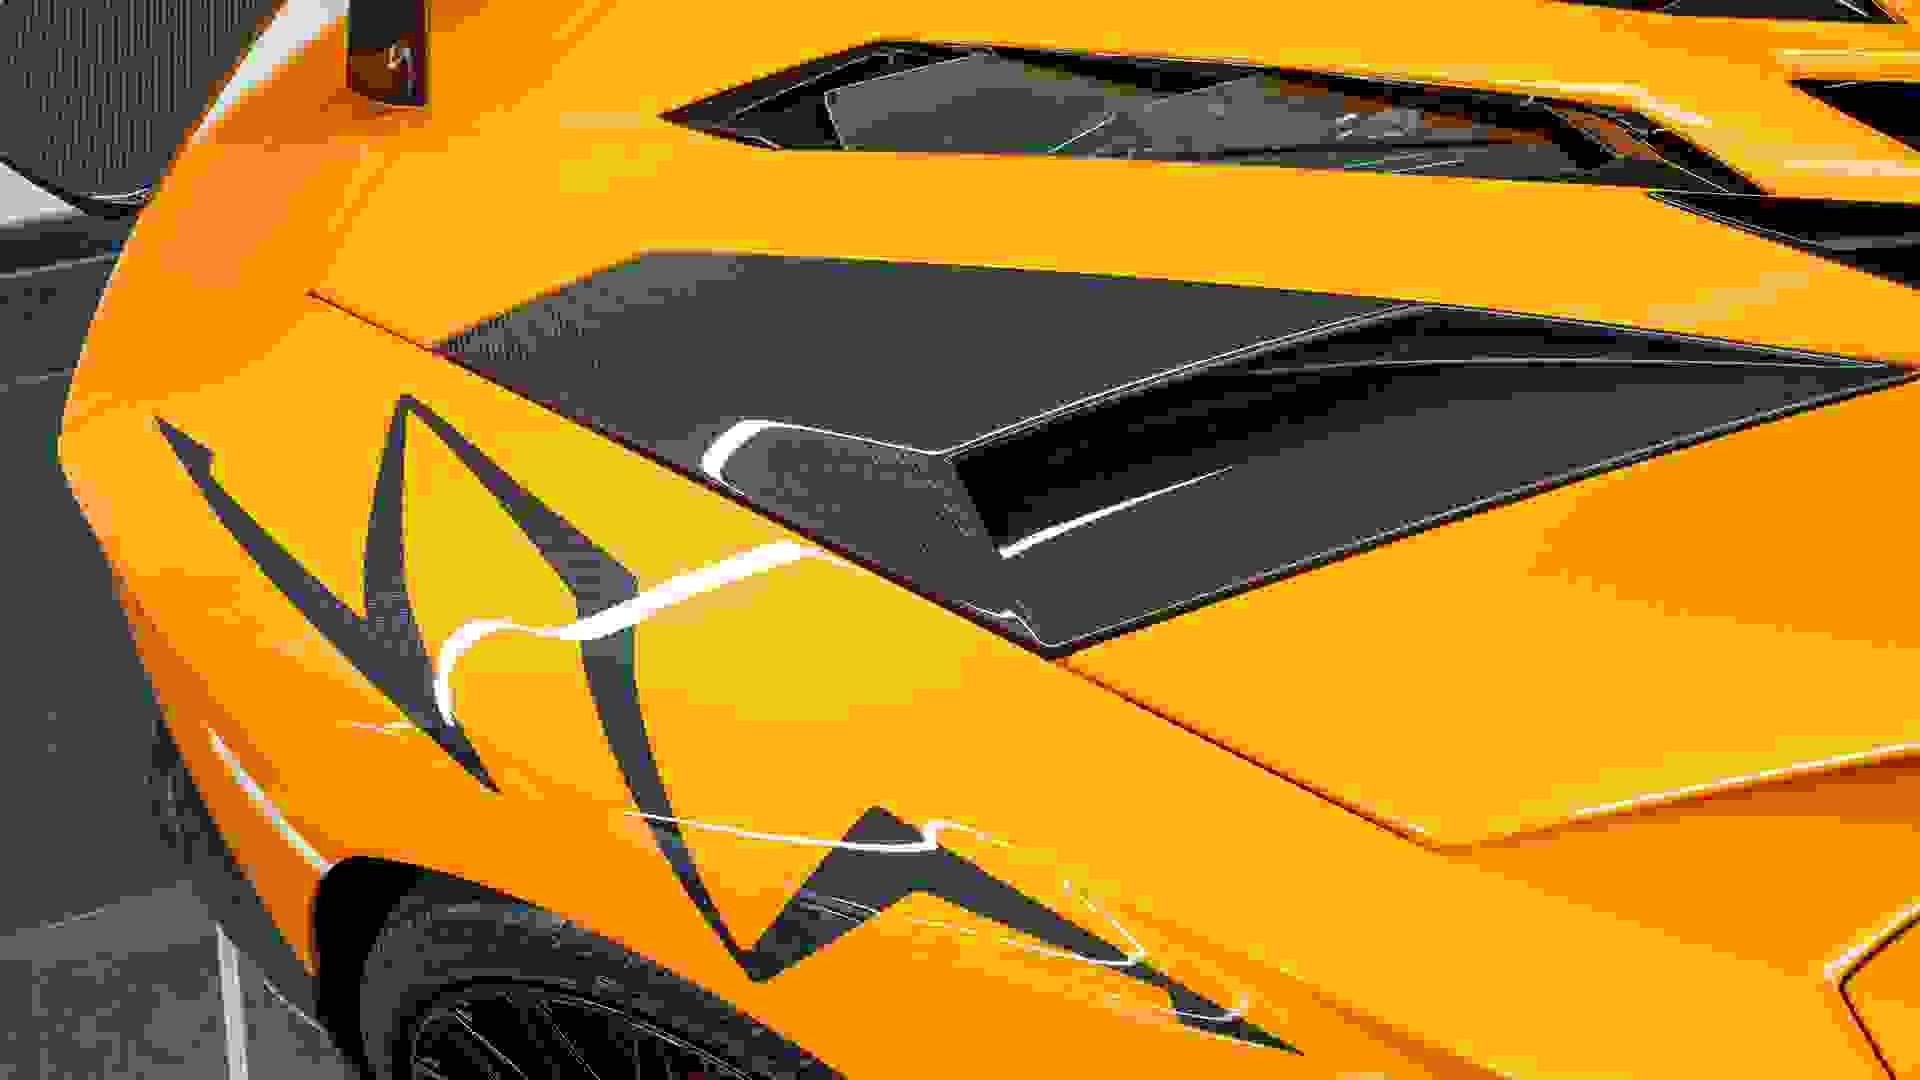 Lamborghini AVENTADOR SV Photo 51b49210-280b-4d72-8078-bd68068e1f52.jpg